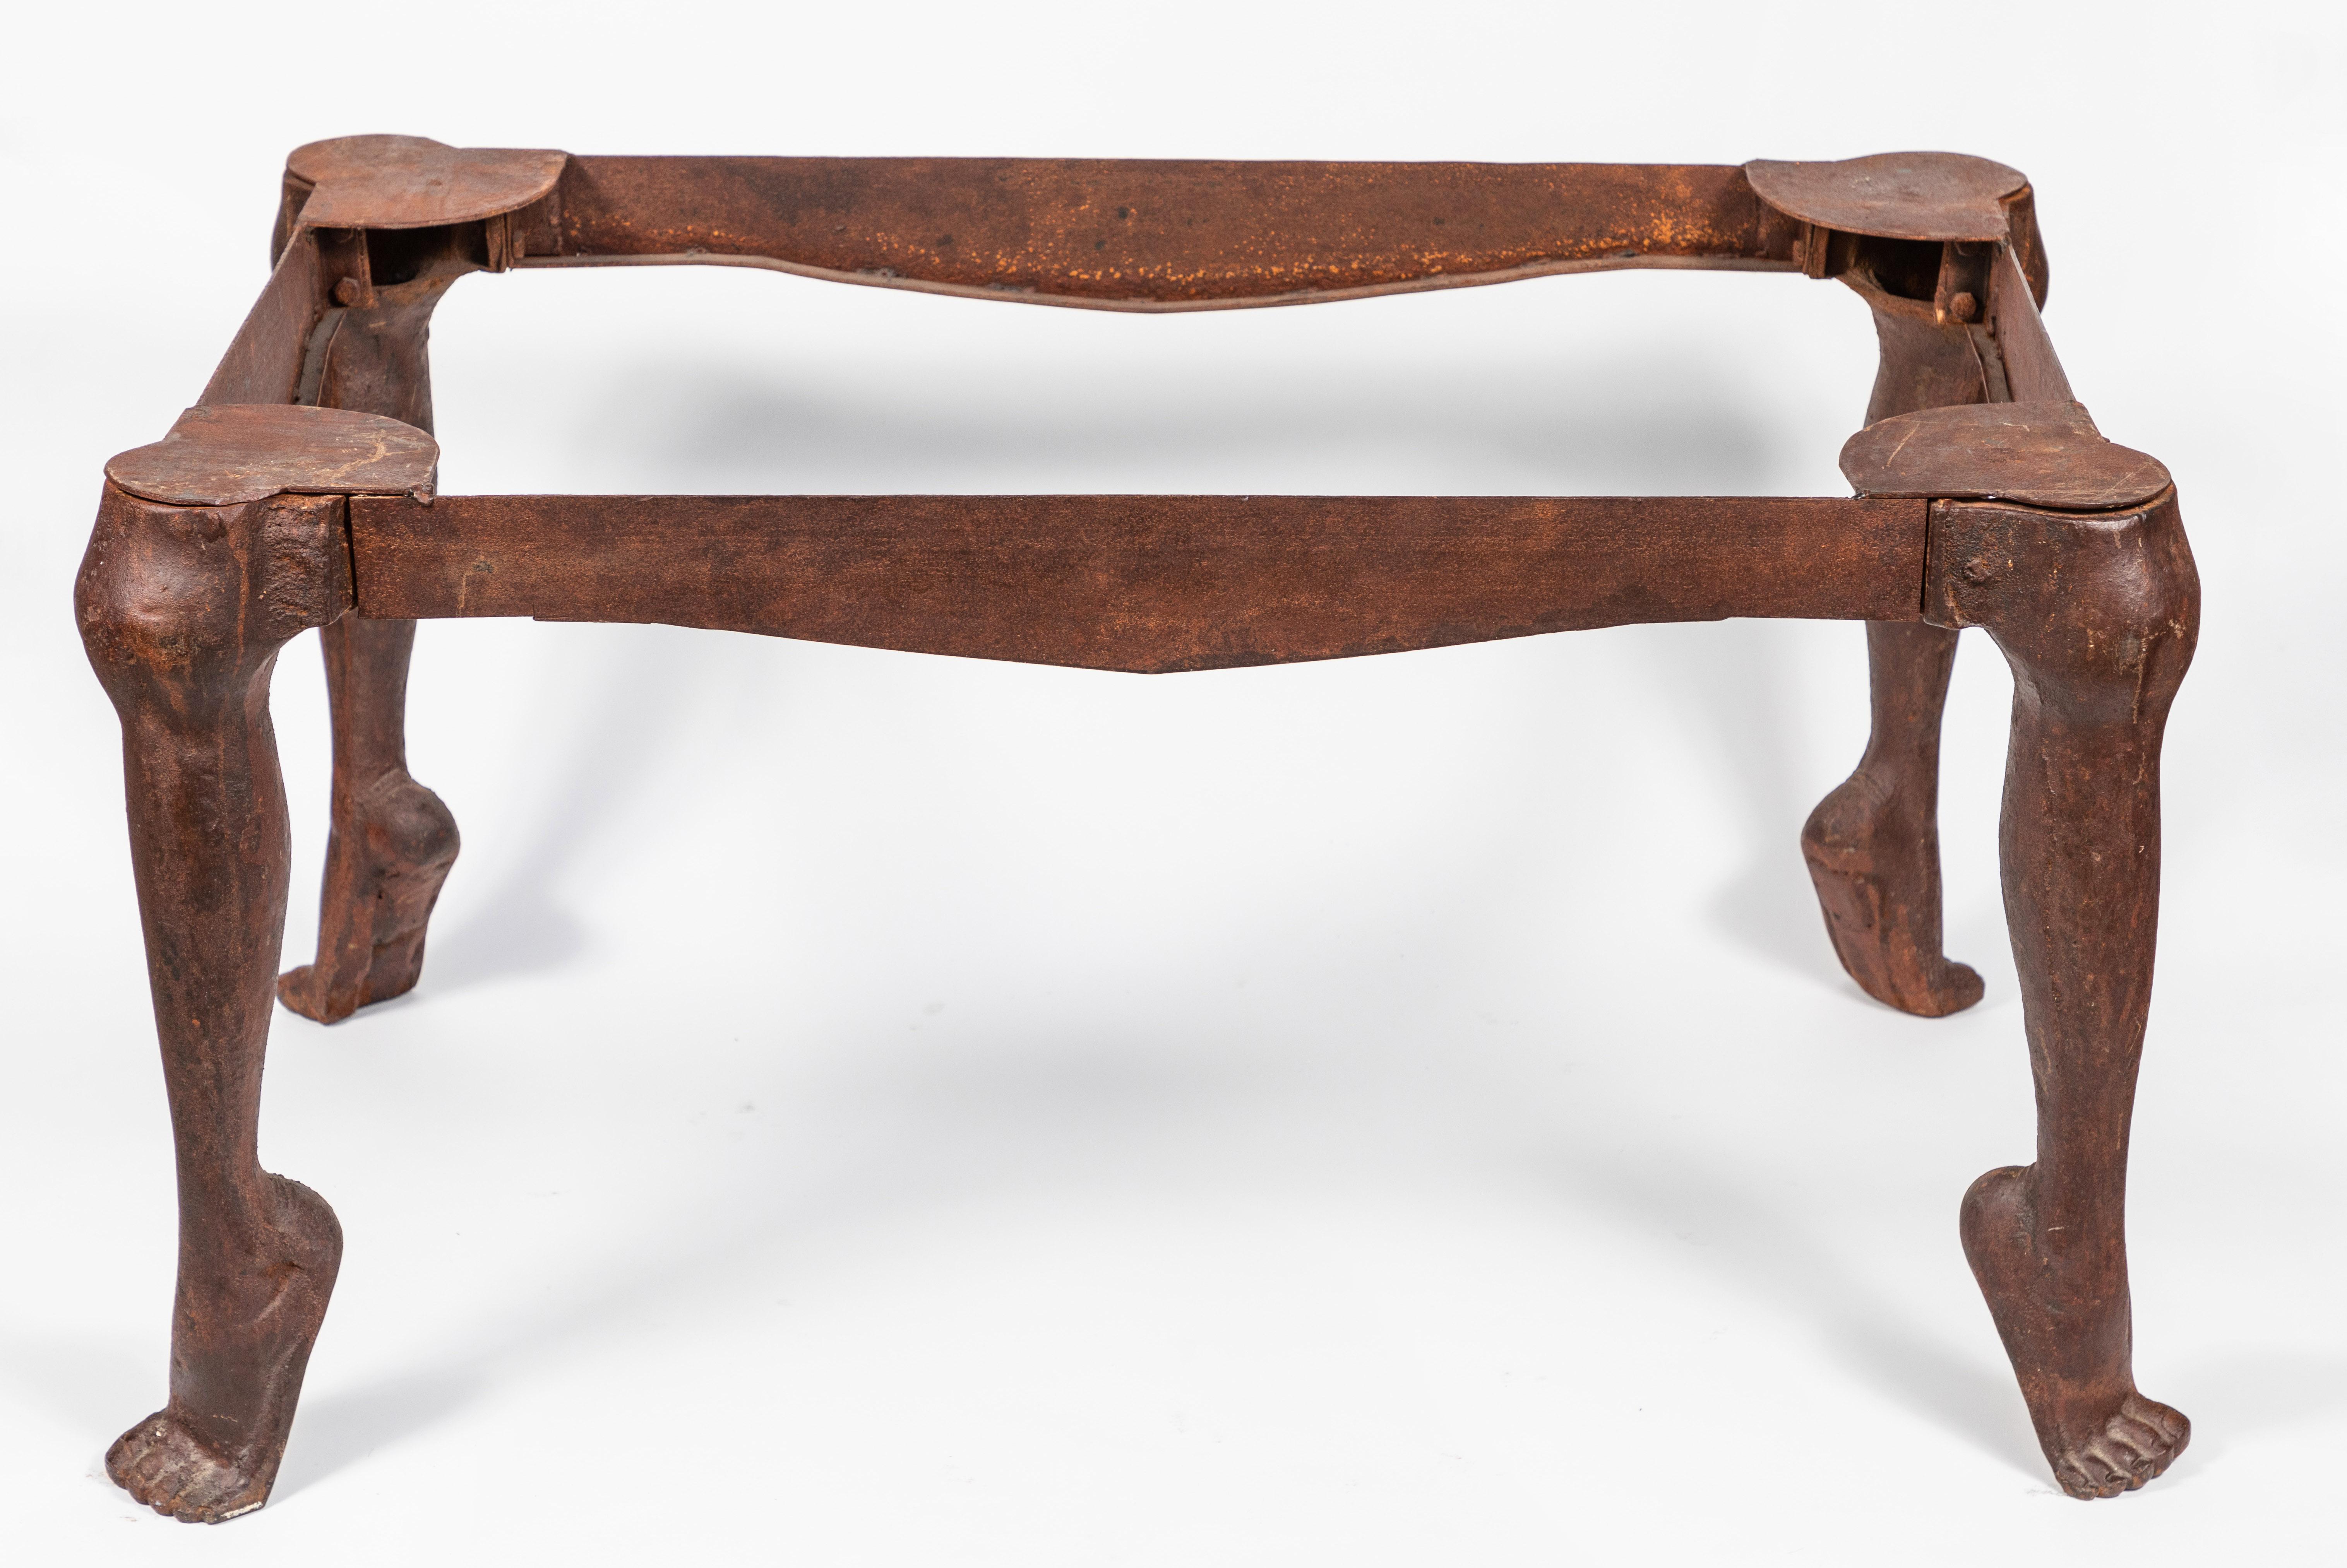 Fantastique table en métal dans le style de Salvador Dali, avec des pieds et des jambes sculptés en métal. Le prix est celui de la table uniquement, mais un plateau en verre ou en pierre peut être commandé sur mesure.